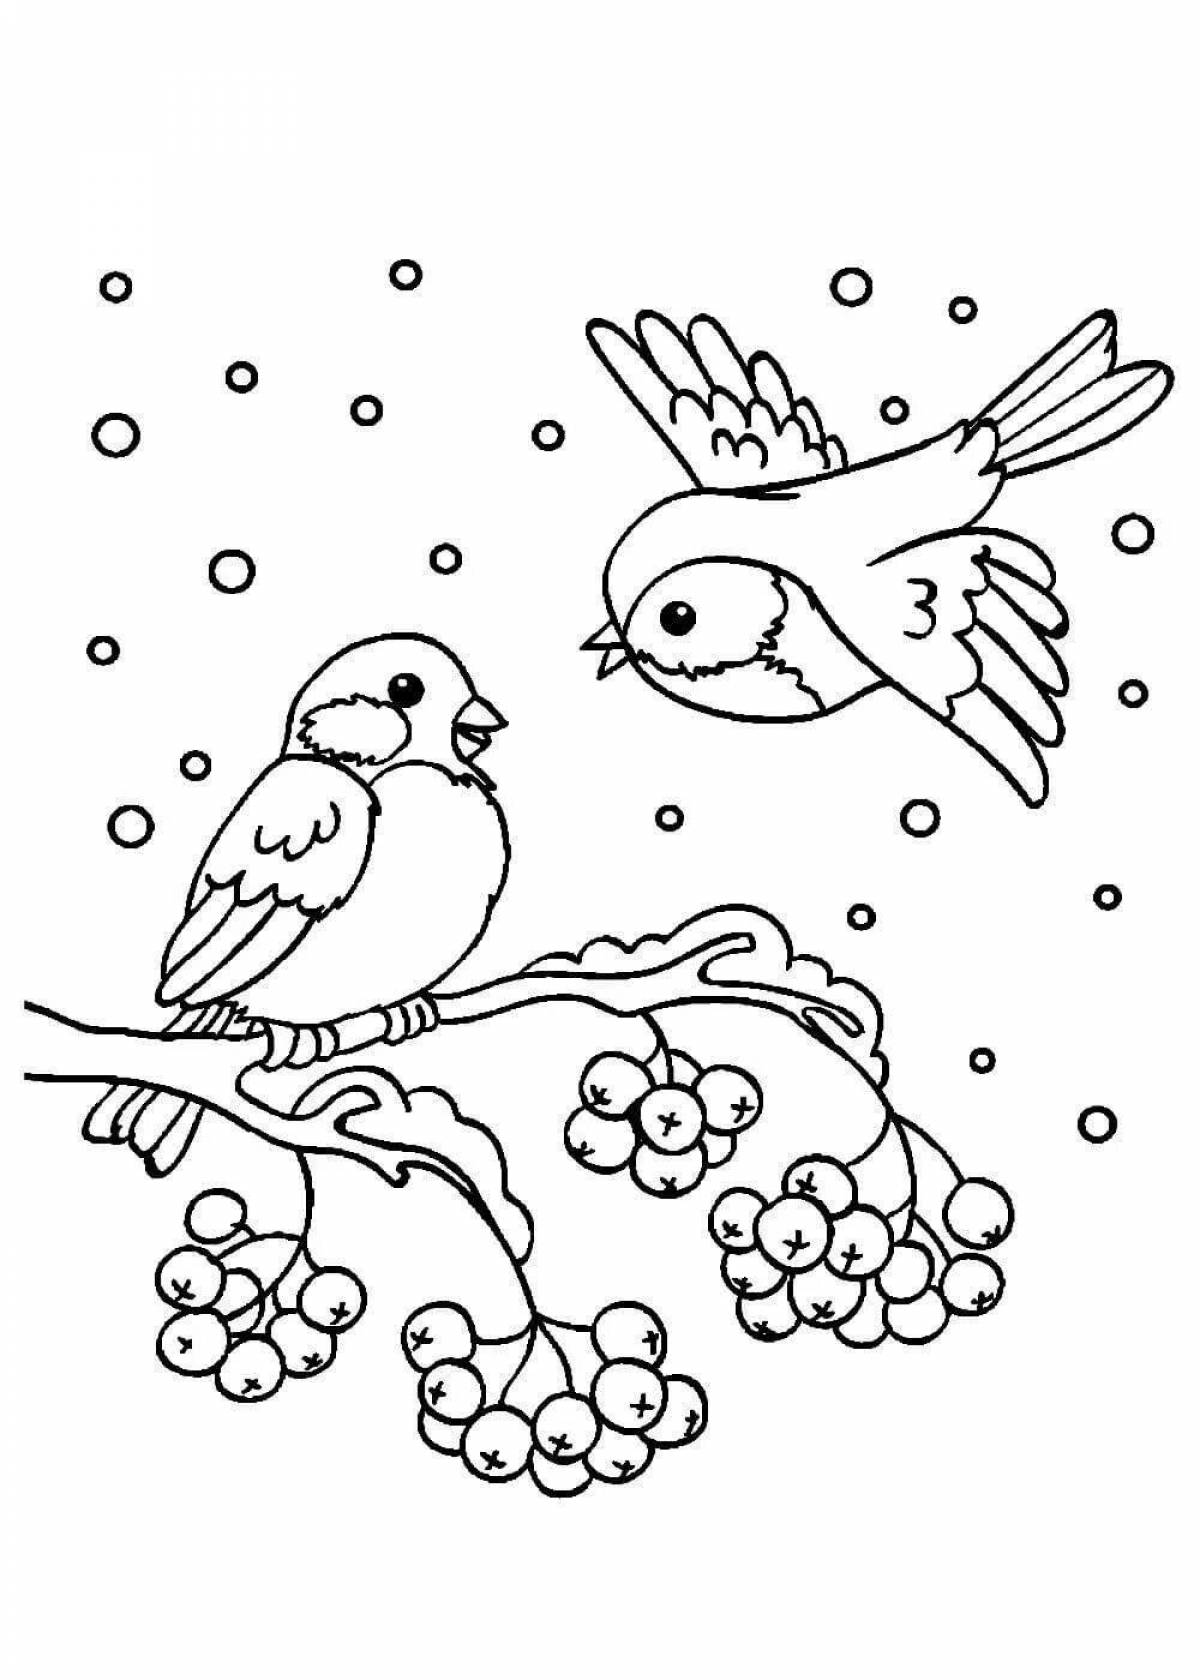 Увлекательная раскраска зимних птиц для детей 6-7 лет